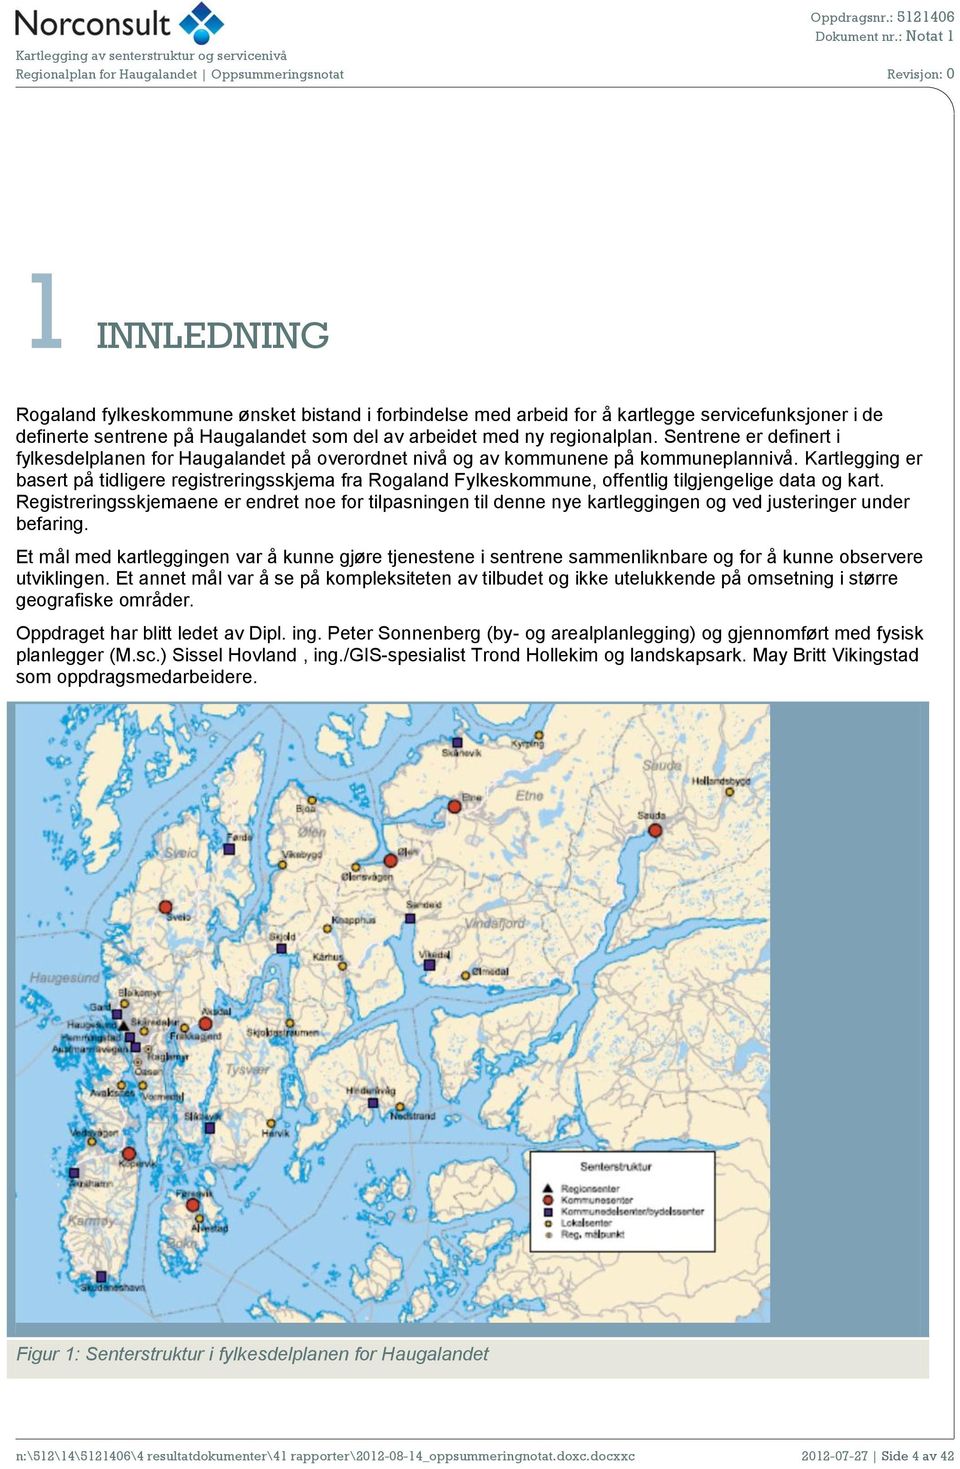 Kartlegging er basert på tidligere registreringsskjema fra Rogaland Fylkeskommune, offentlig tilgjengelige data og kart.